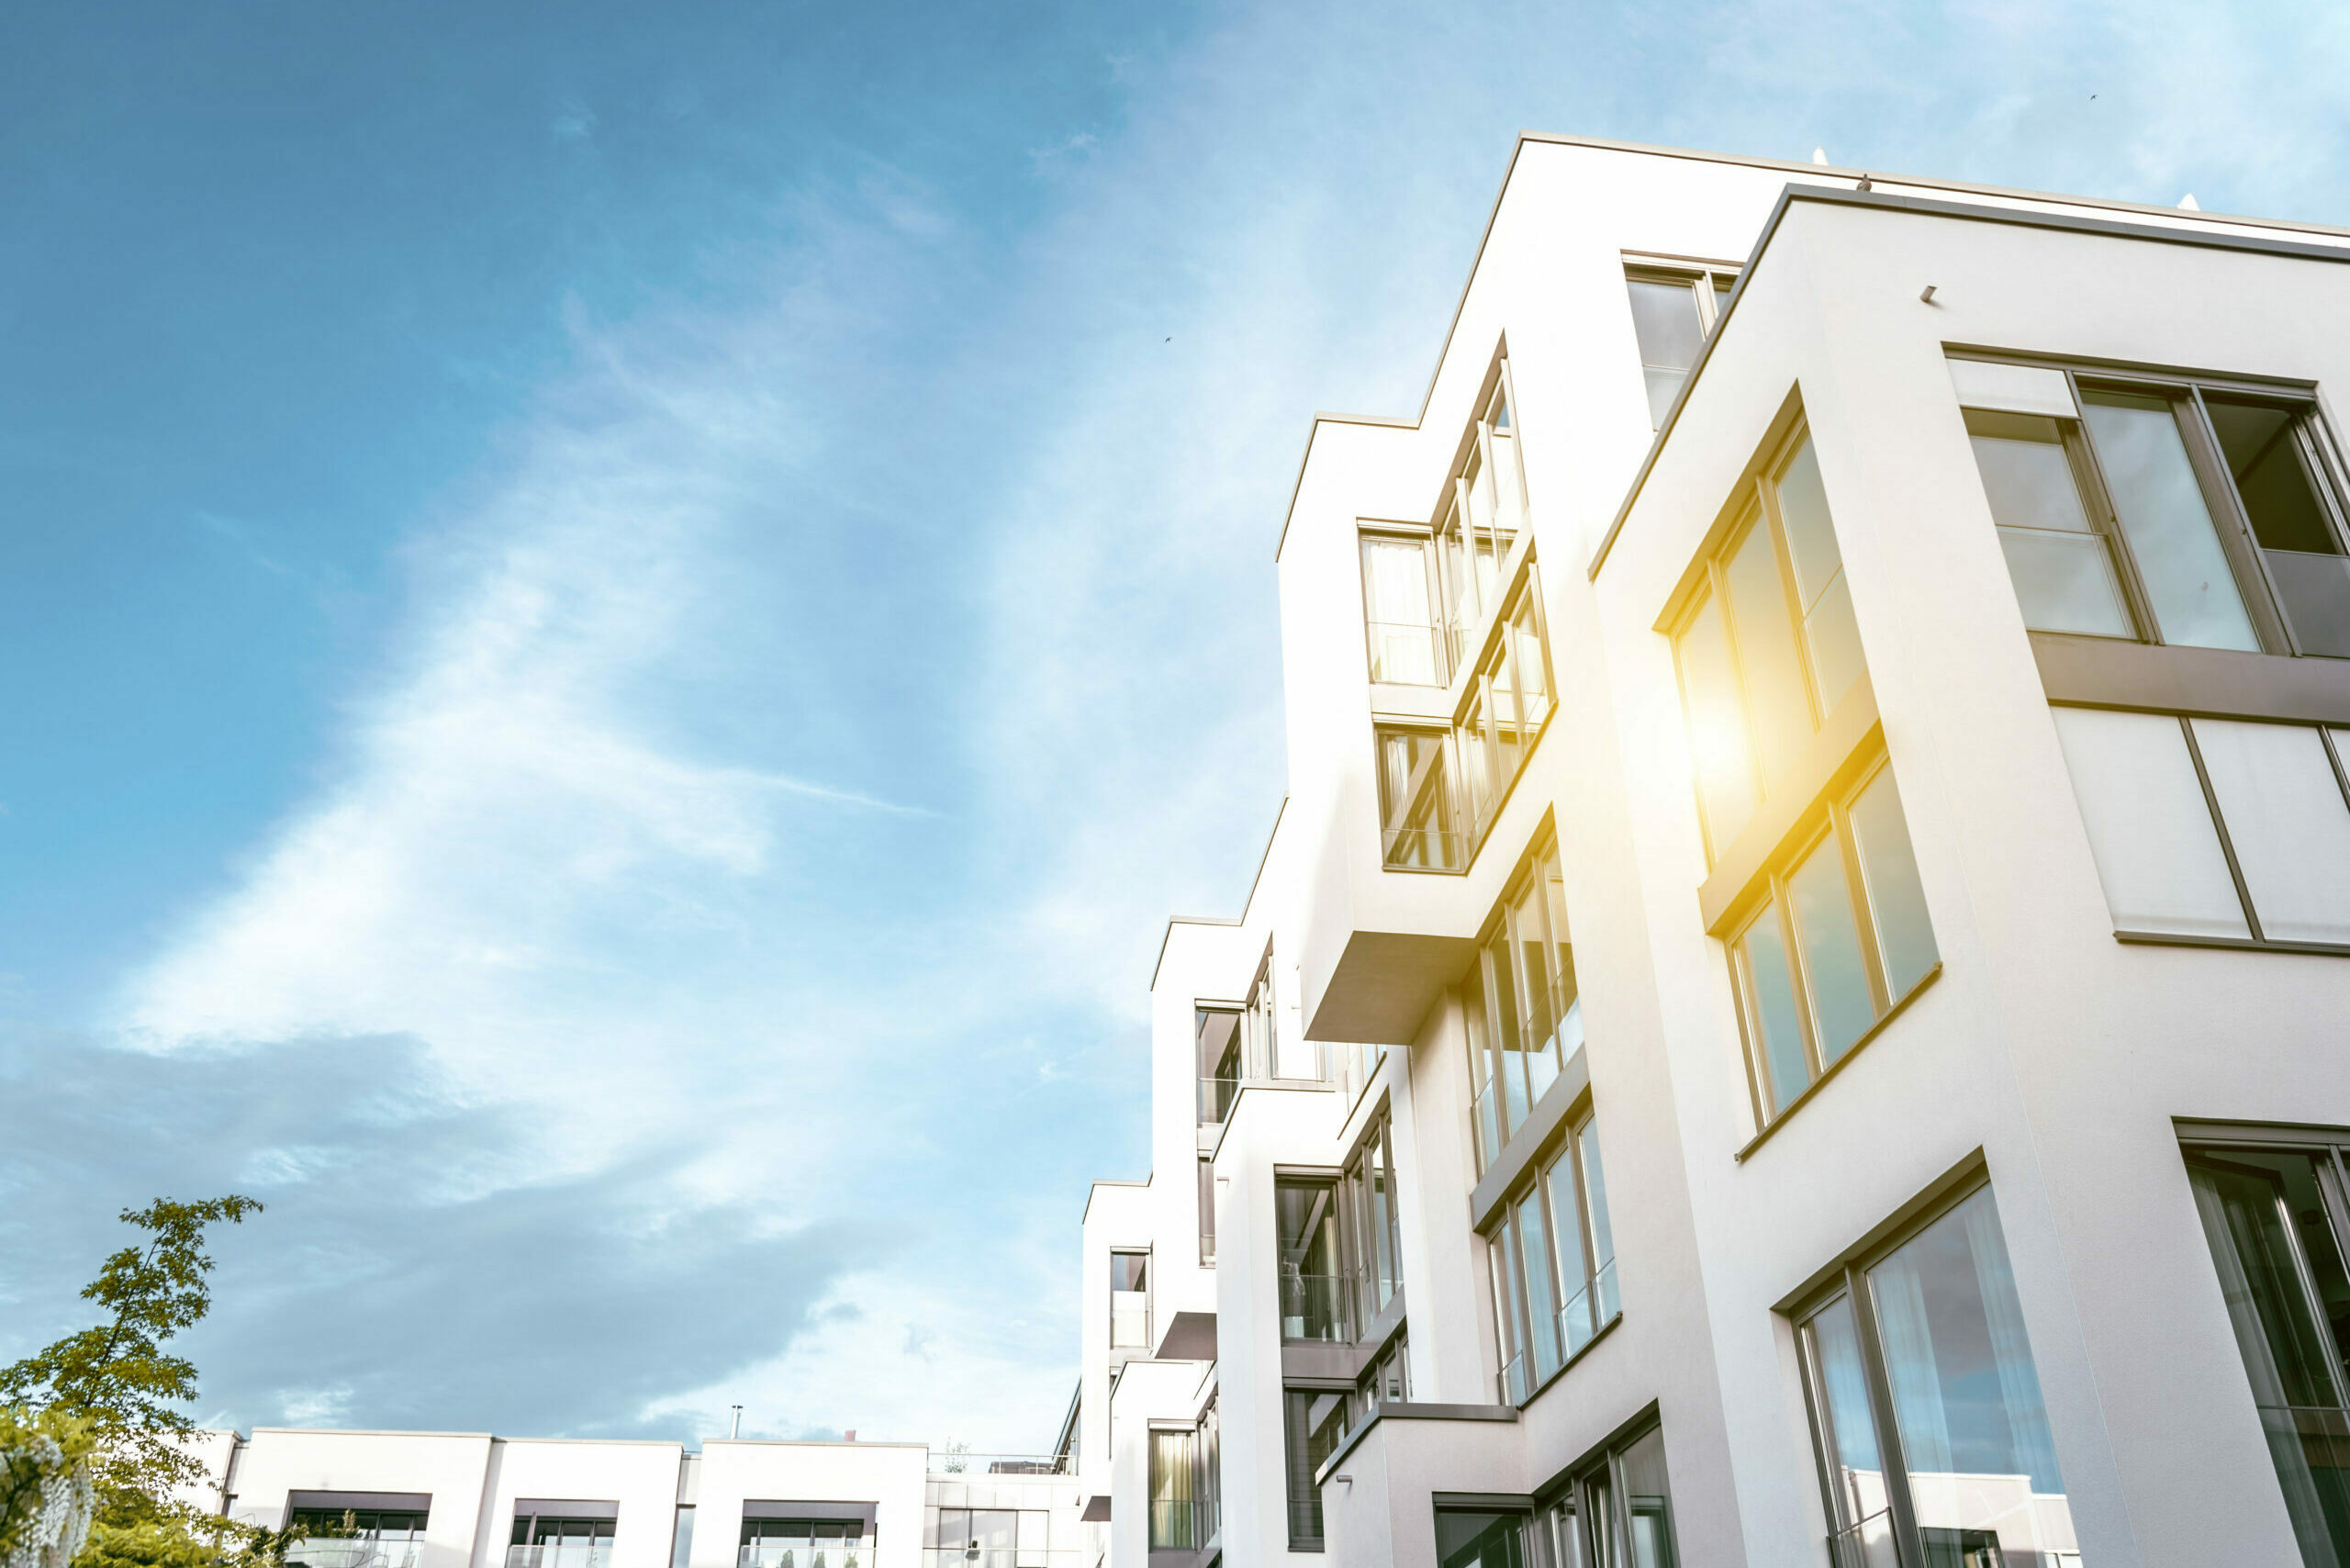 Fasade eines Mehrfamilienhaus im Schein der Sonne | Mehrfamilienhaus kaufen von Schick Immobilien Berlin